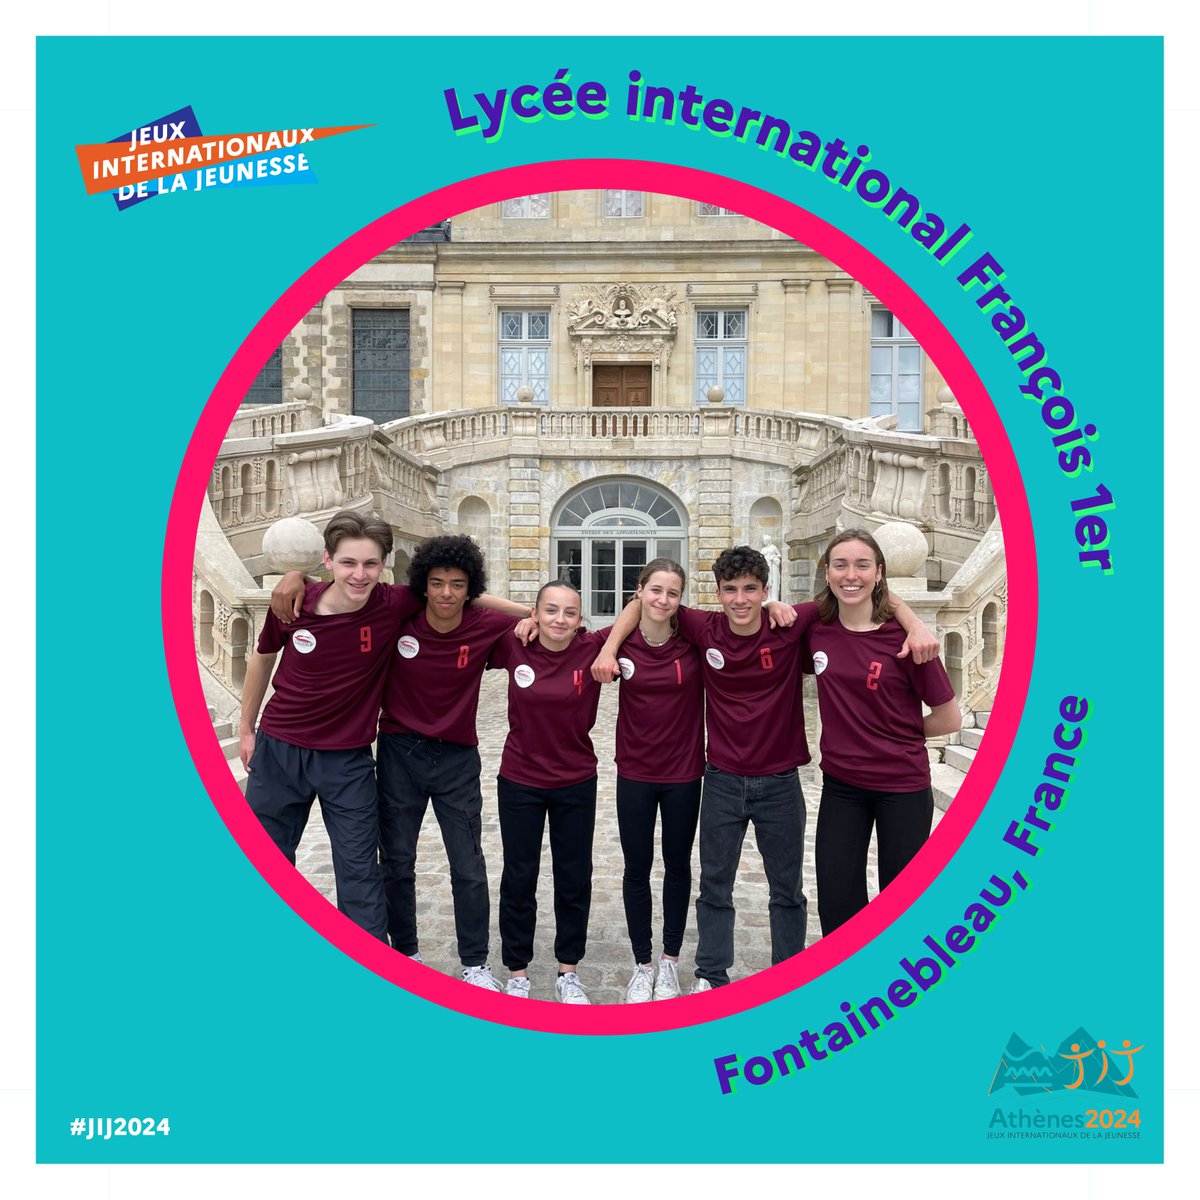 #JIJ2024 🏄‍♀️🏄‍♂️ Dernière vague de présentation de quelques équipes parmi les 64 😍 Voici l’équipe du lycée international François 1er à Fontainebleau en France (académie de Créteil) 🔥 Allez lire leur message sur Instagram : instagram.com/p/C7UJebNt3ke/